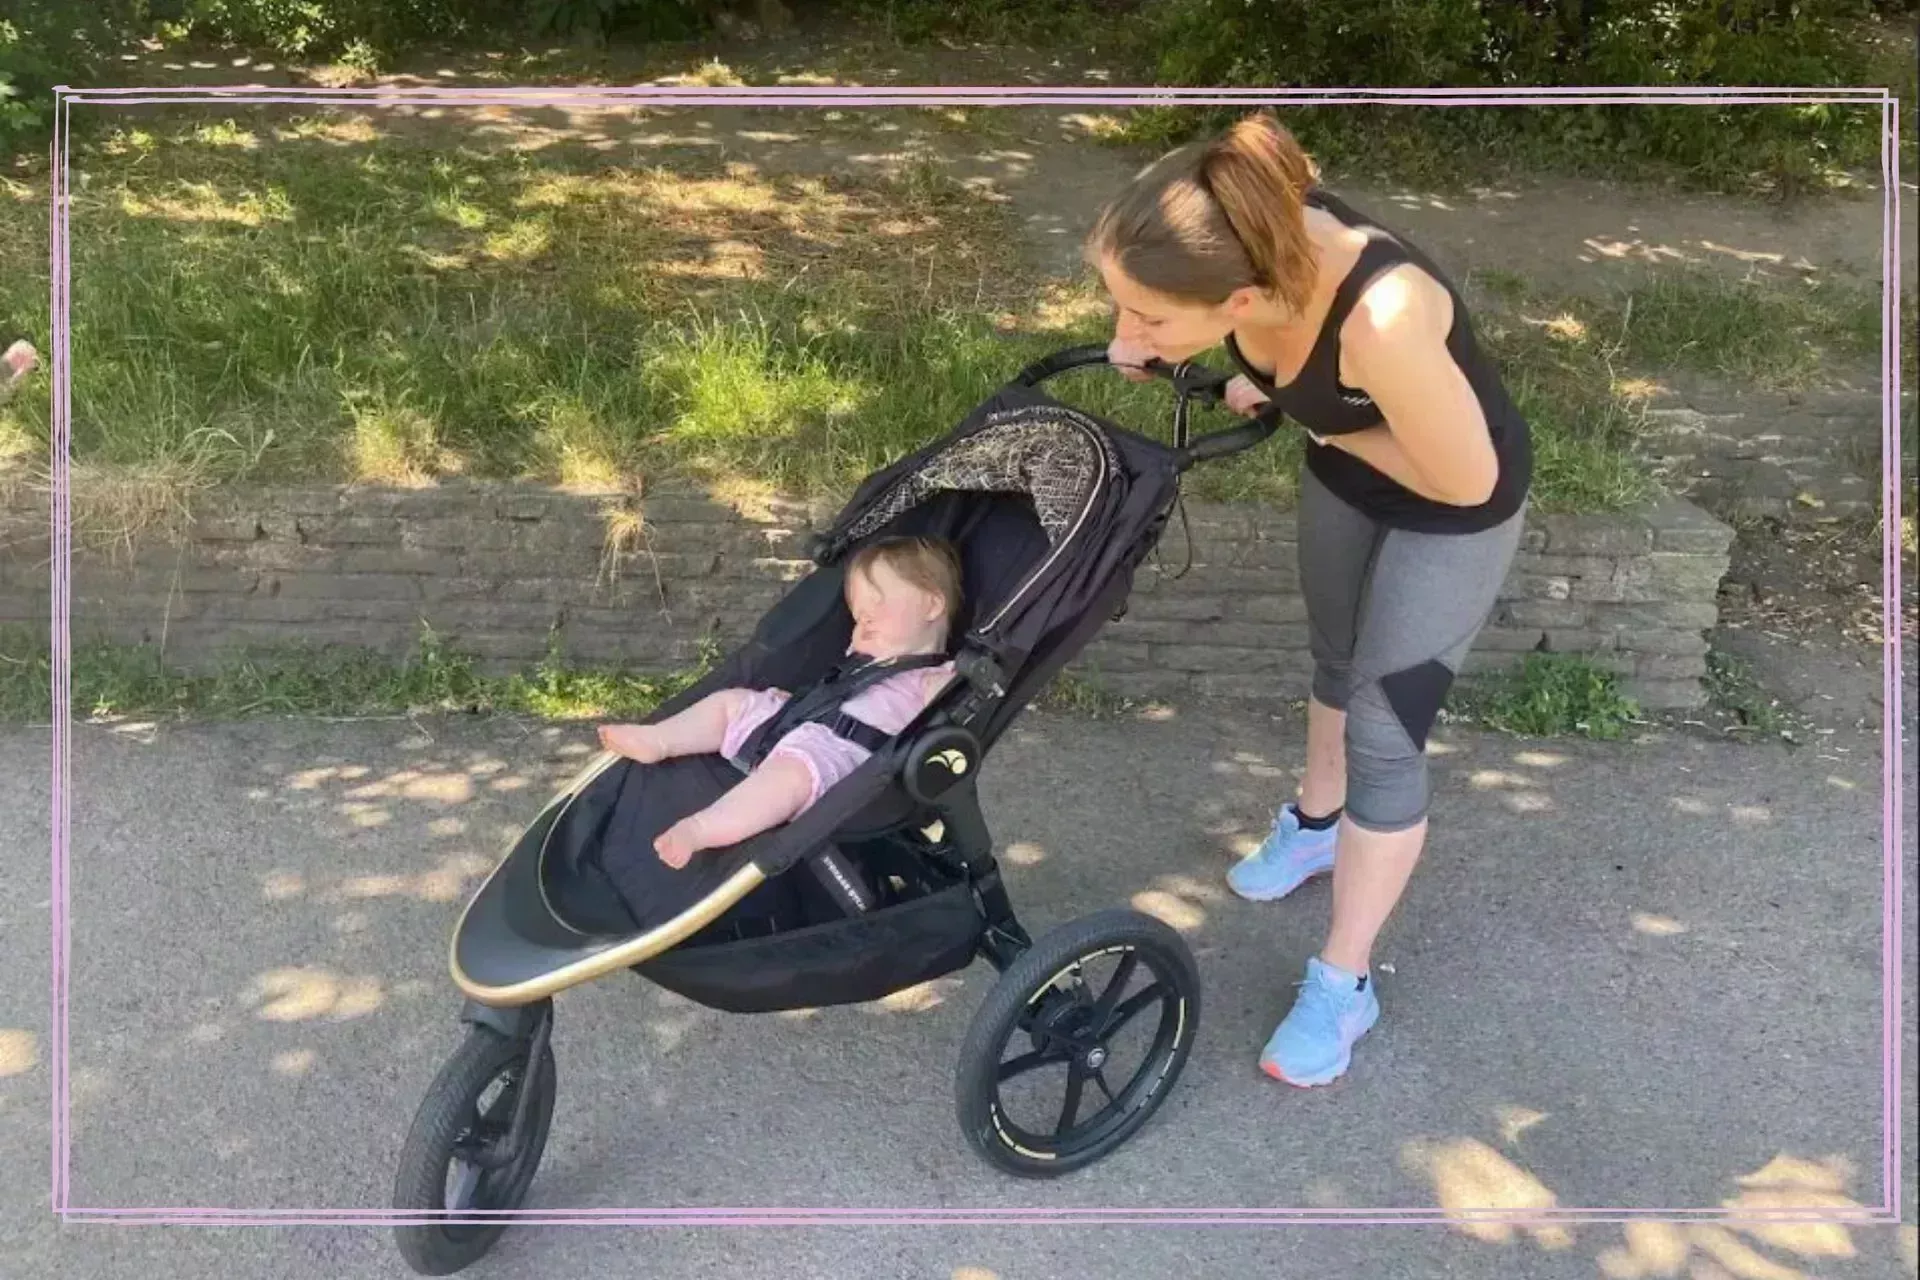 Ejercicio postnatal: 5 formas de hacer ejercicio después de tener un bebé